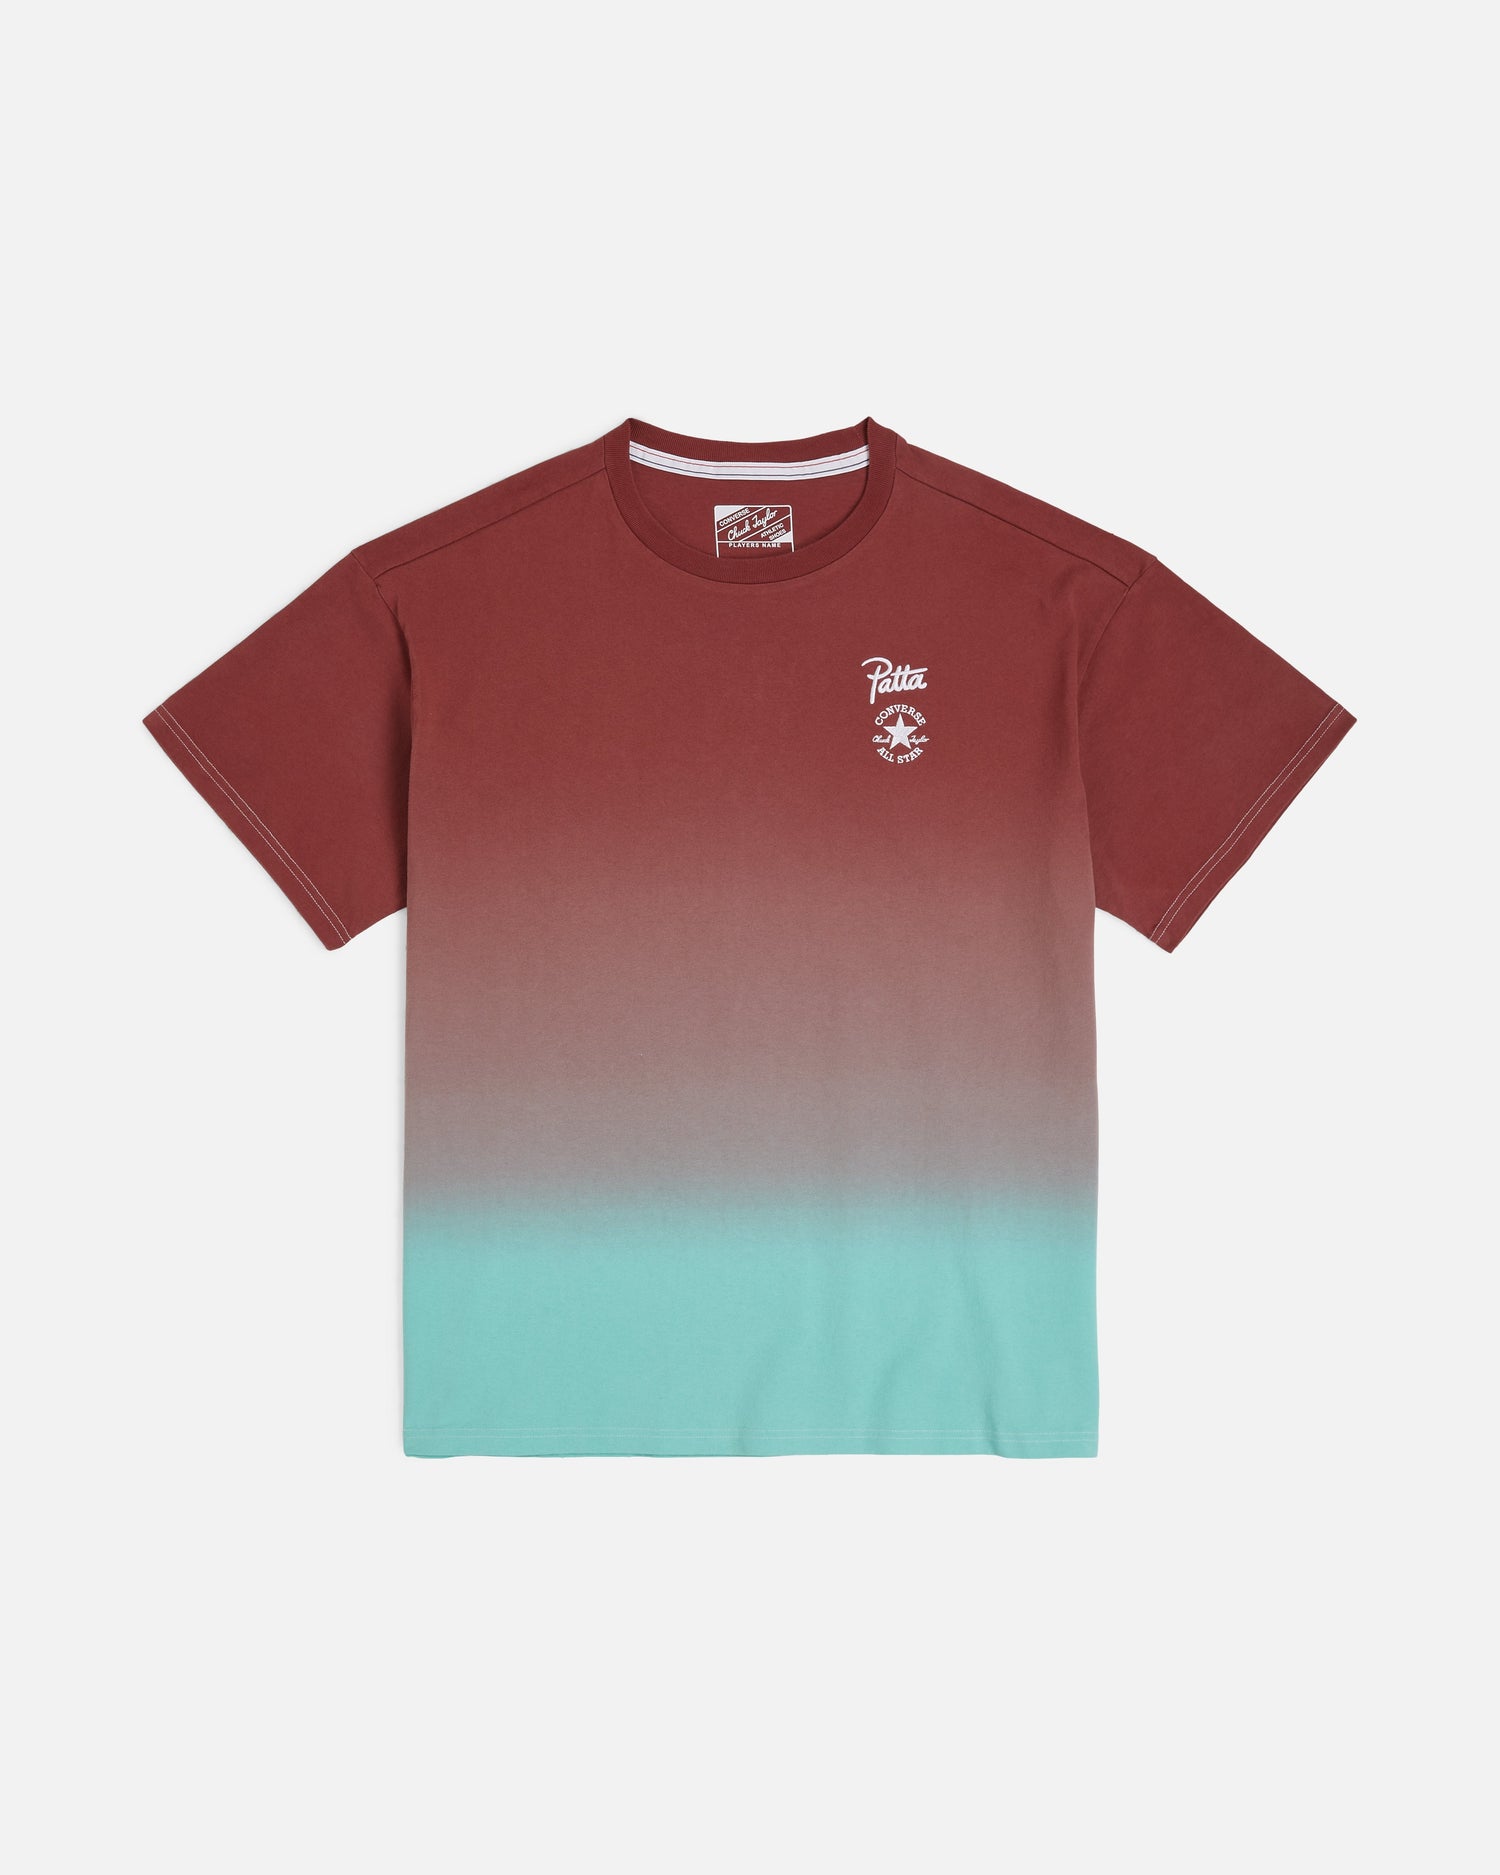 Patta x Converse Rain or Shine T-Shirt (Patta Gradient)